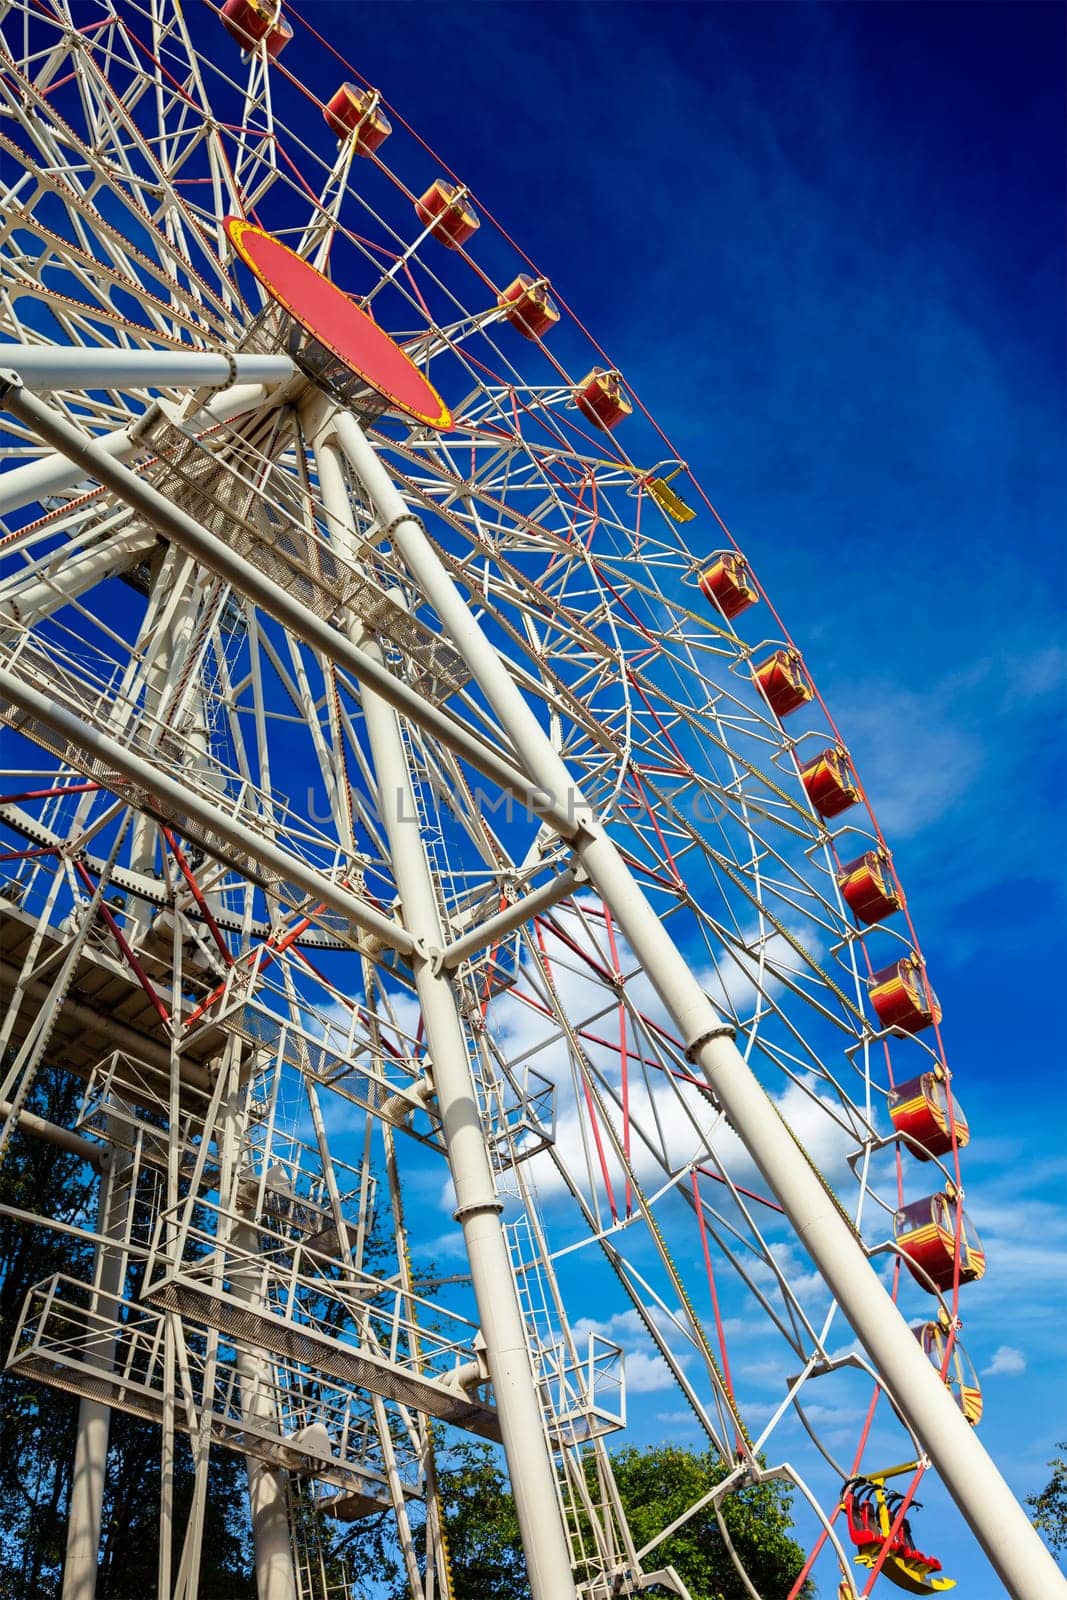 Ferris wheel in sky by dimol